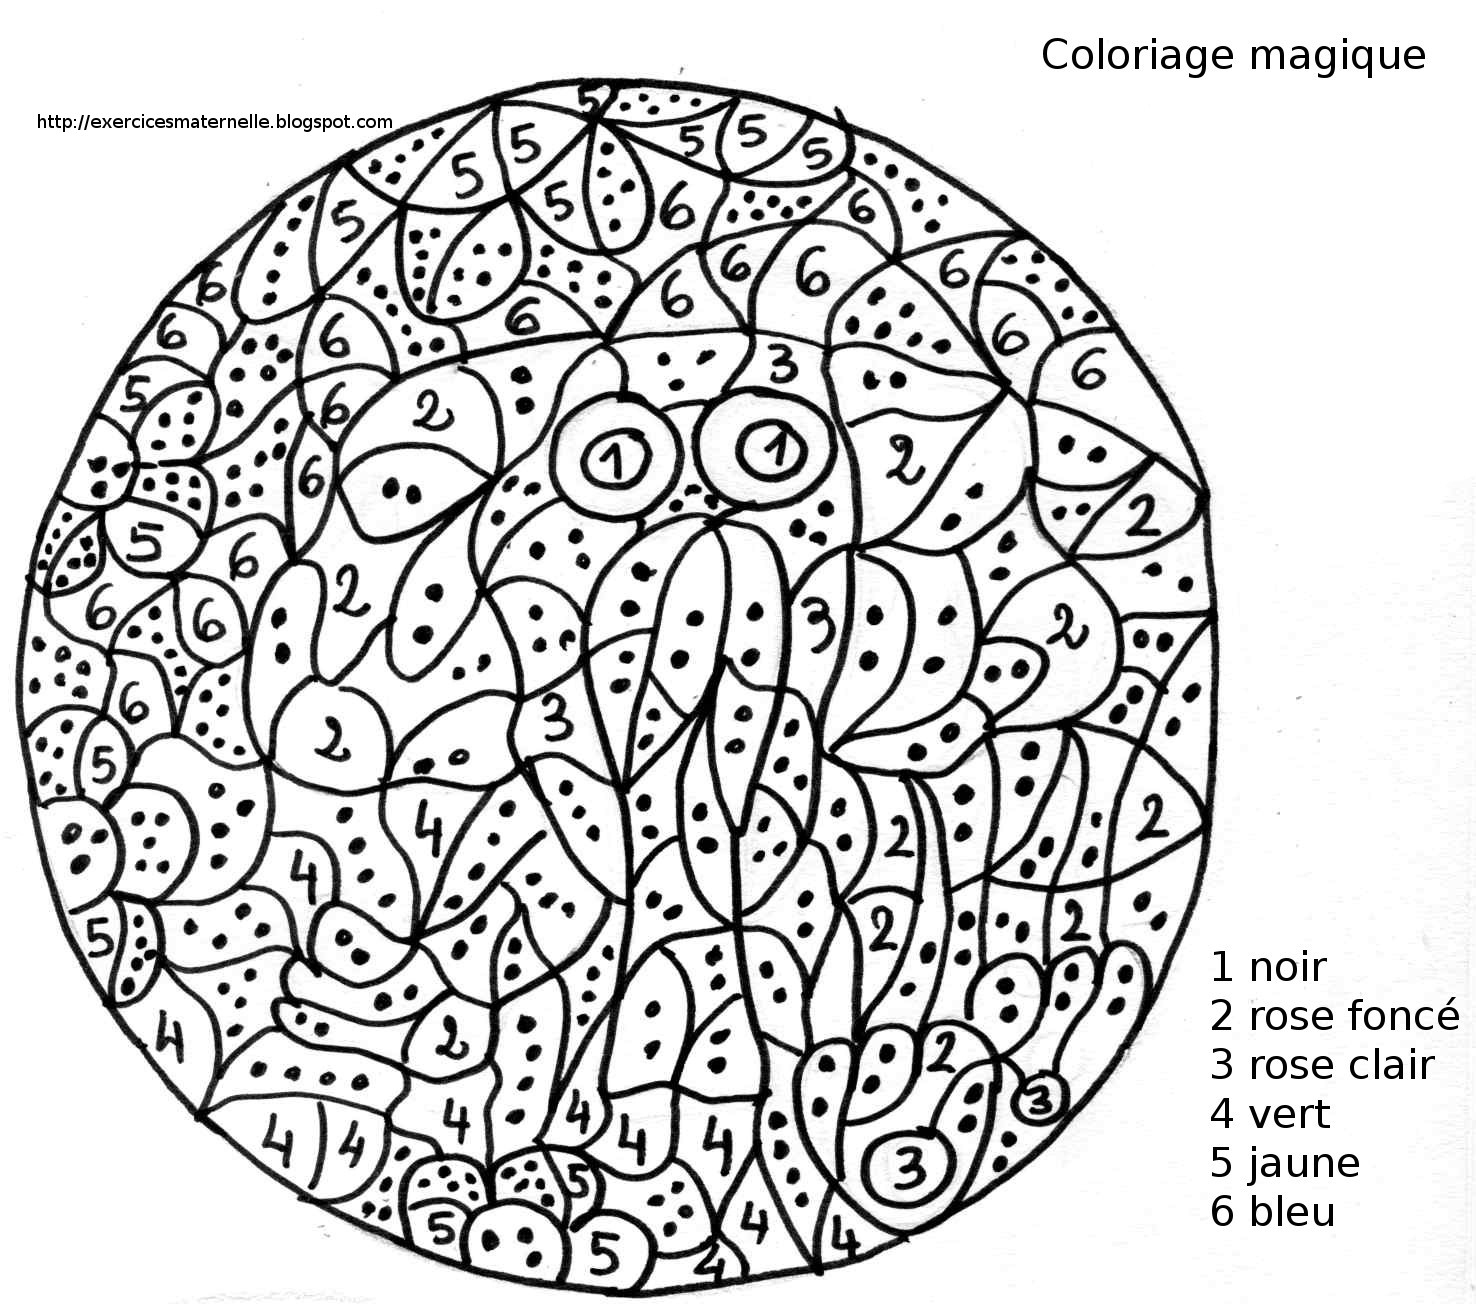 Coloriage Par Numéros #34 (Éducatifs) – Coloriages À Imprimer tout Coloriage Magique Français Cp 